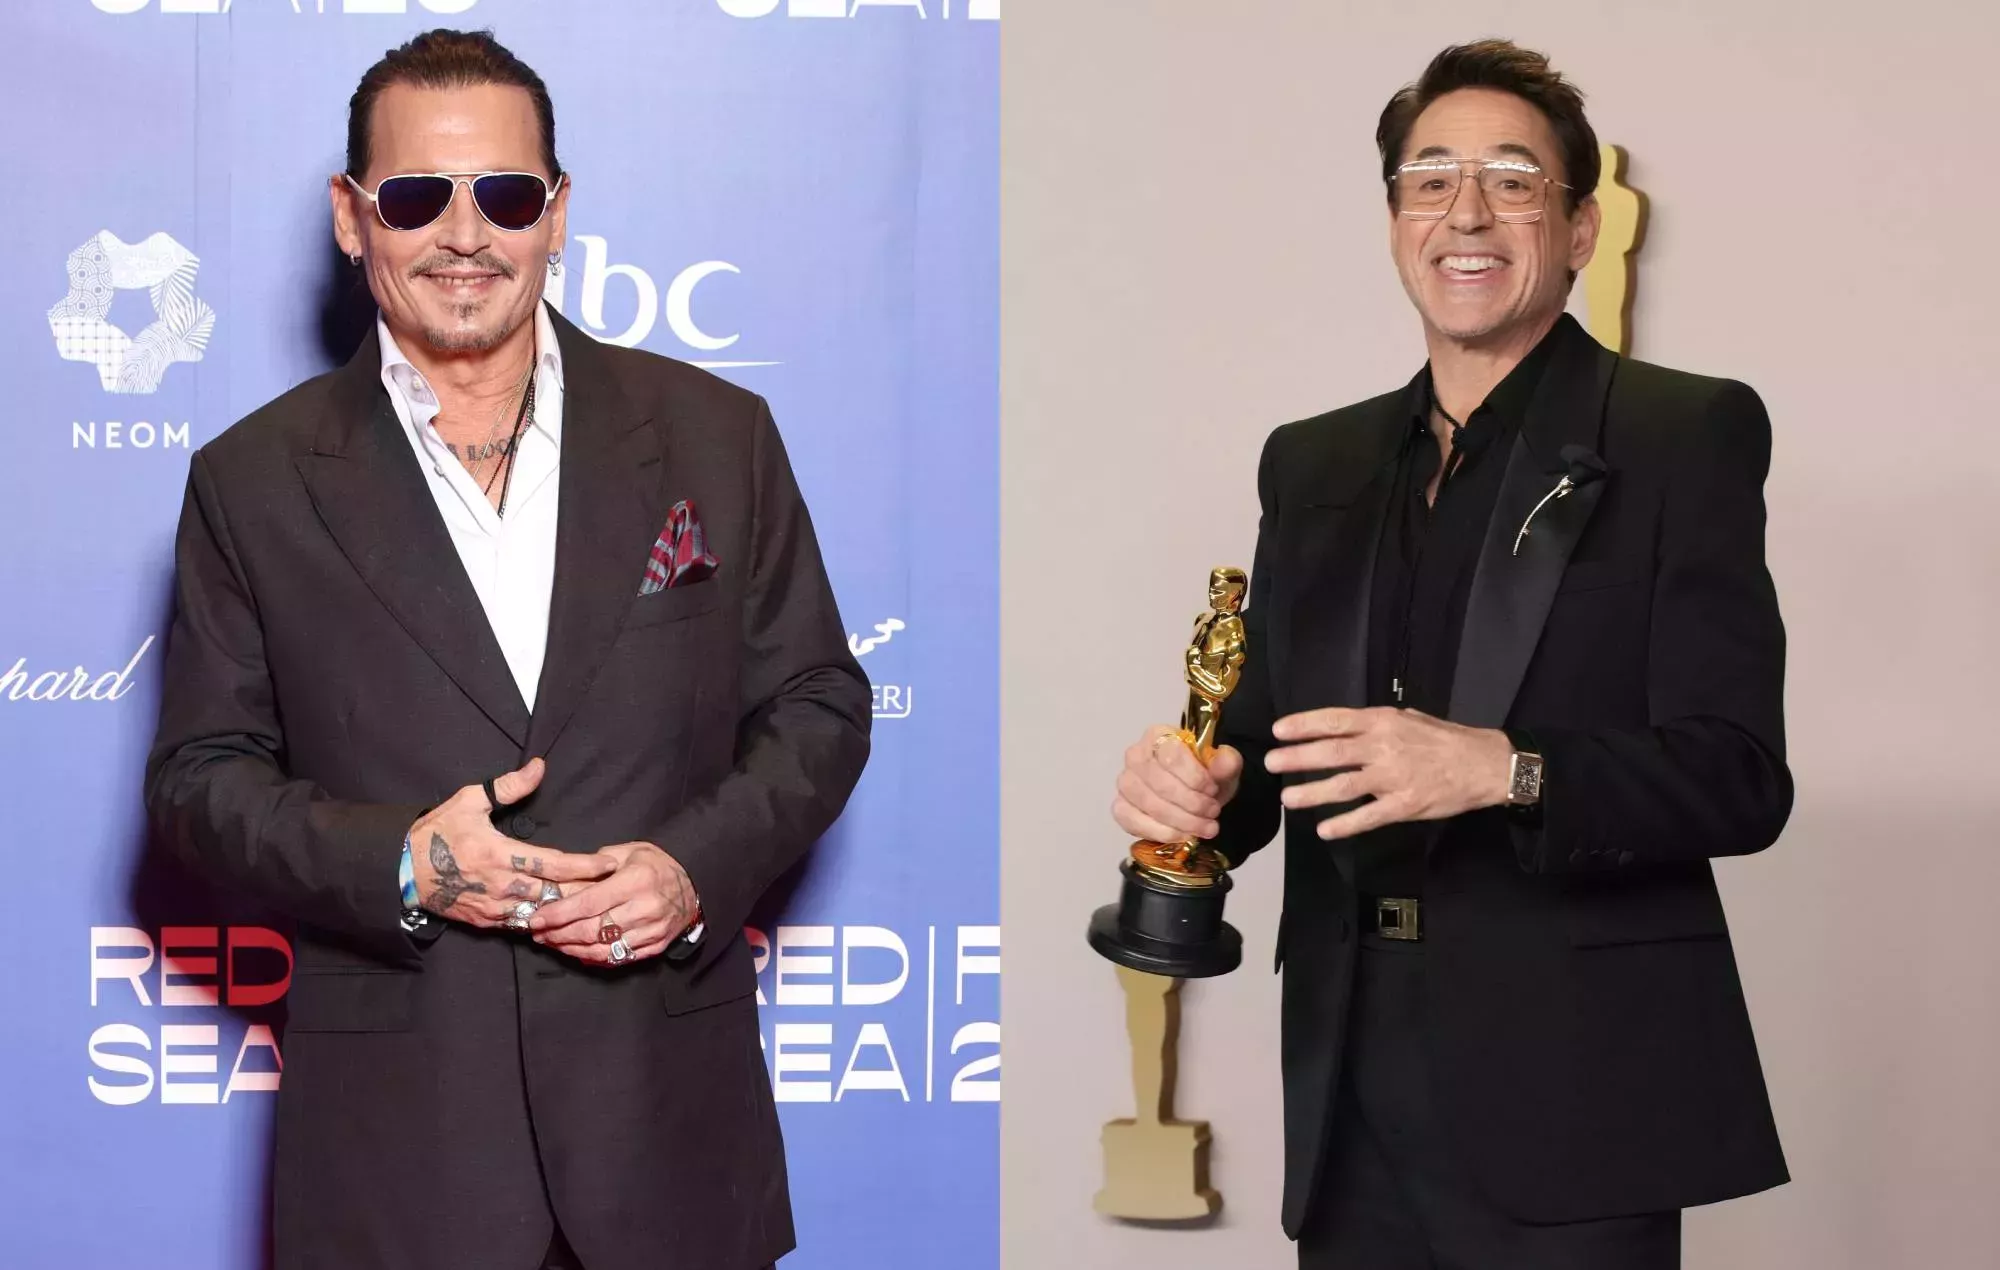 Johnny Depp comparte una foto falsa de los Oscar con Robert Downey Jr que nunca ocurrió